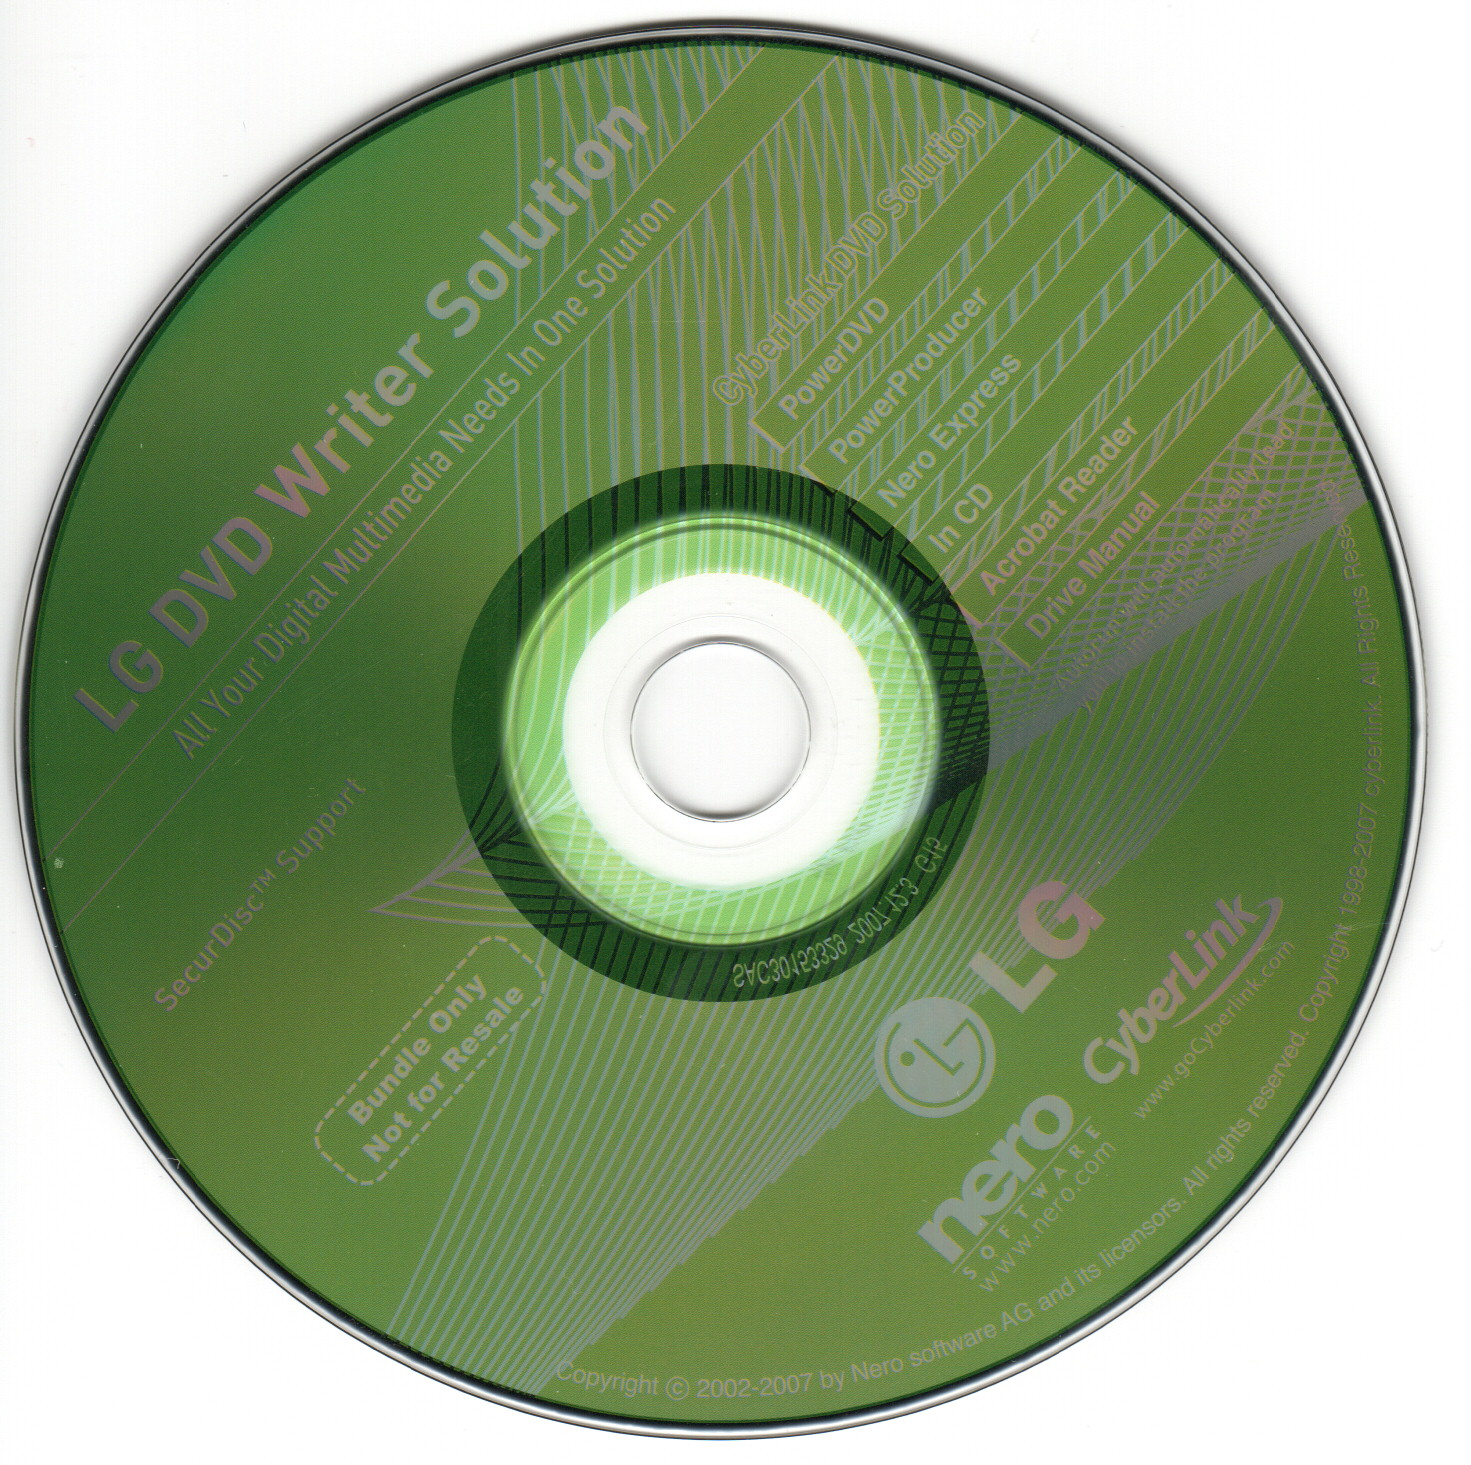 lg dvd writer software download